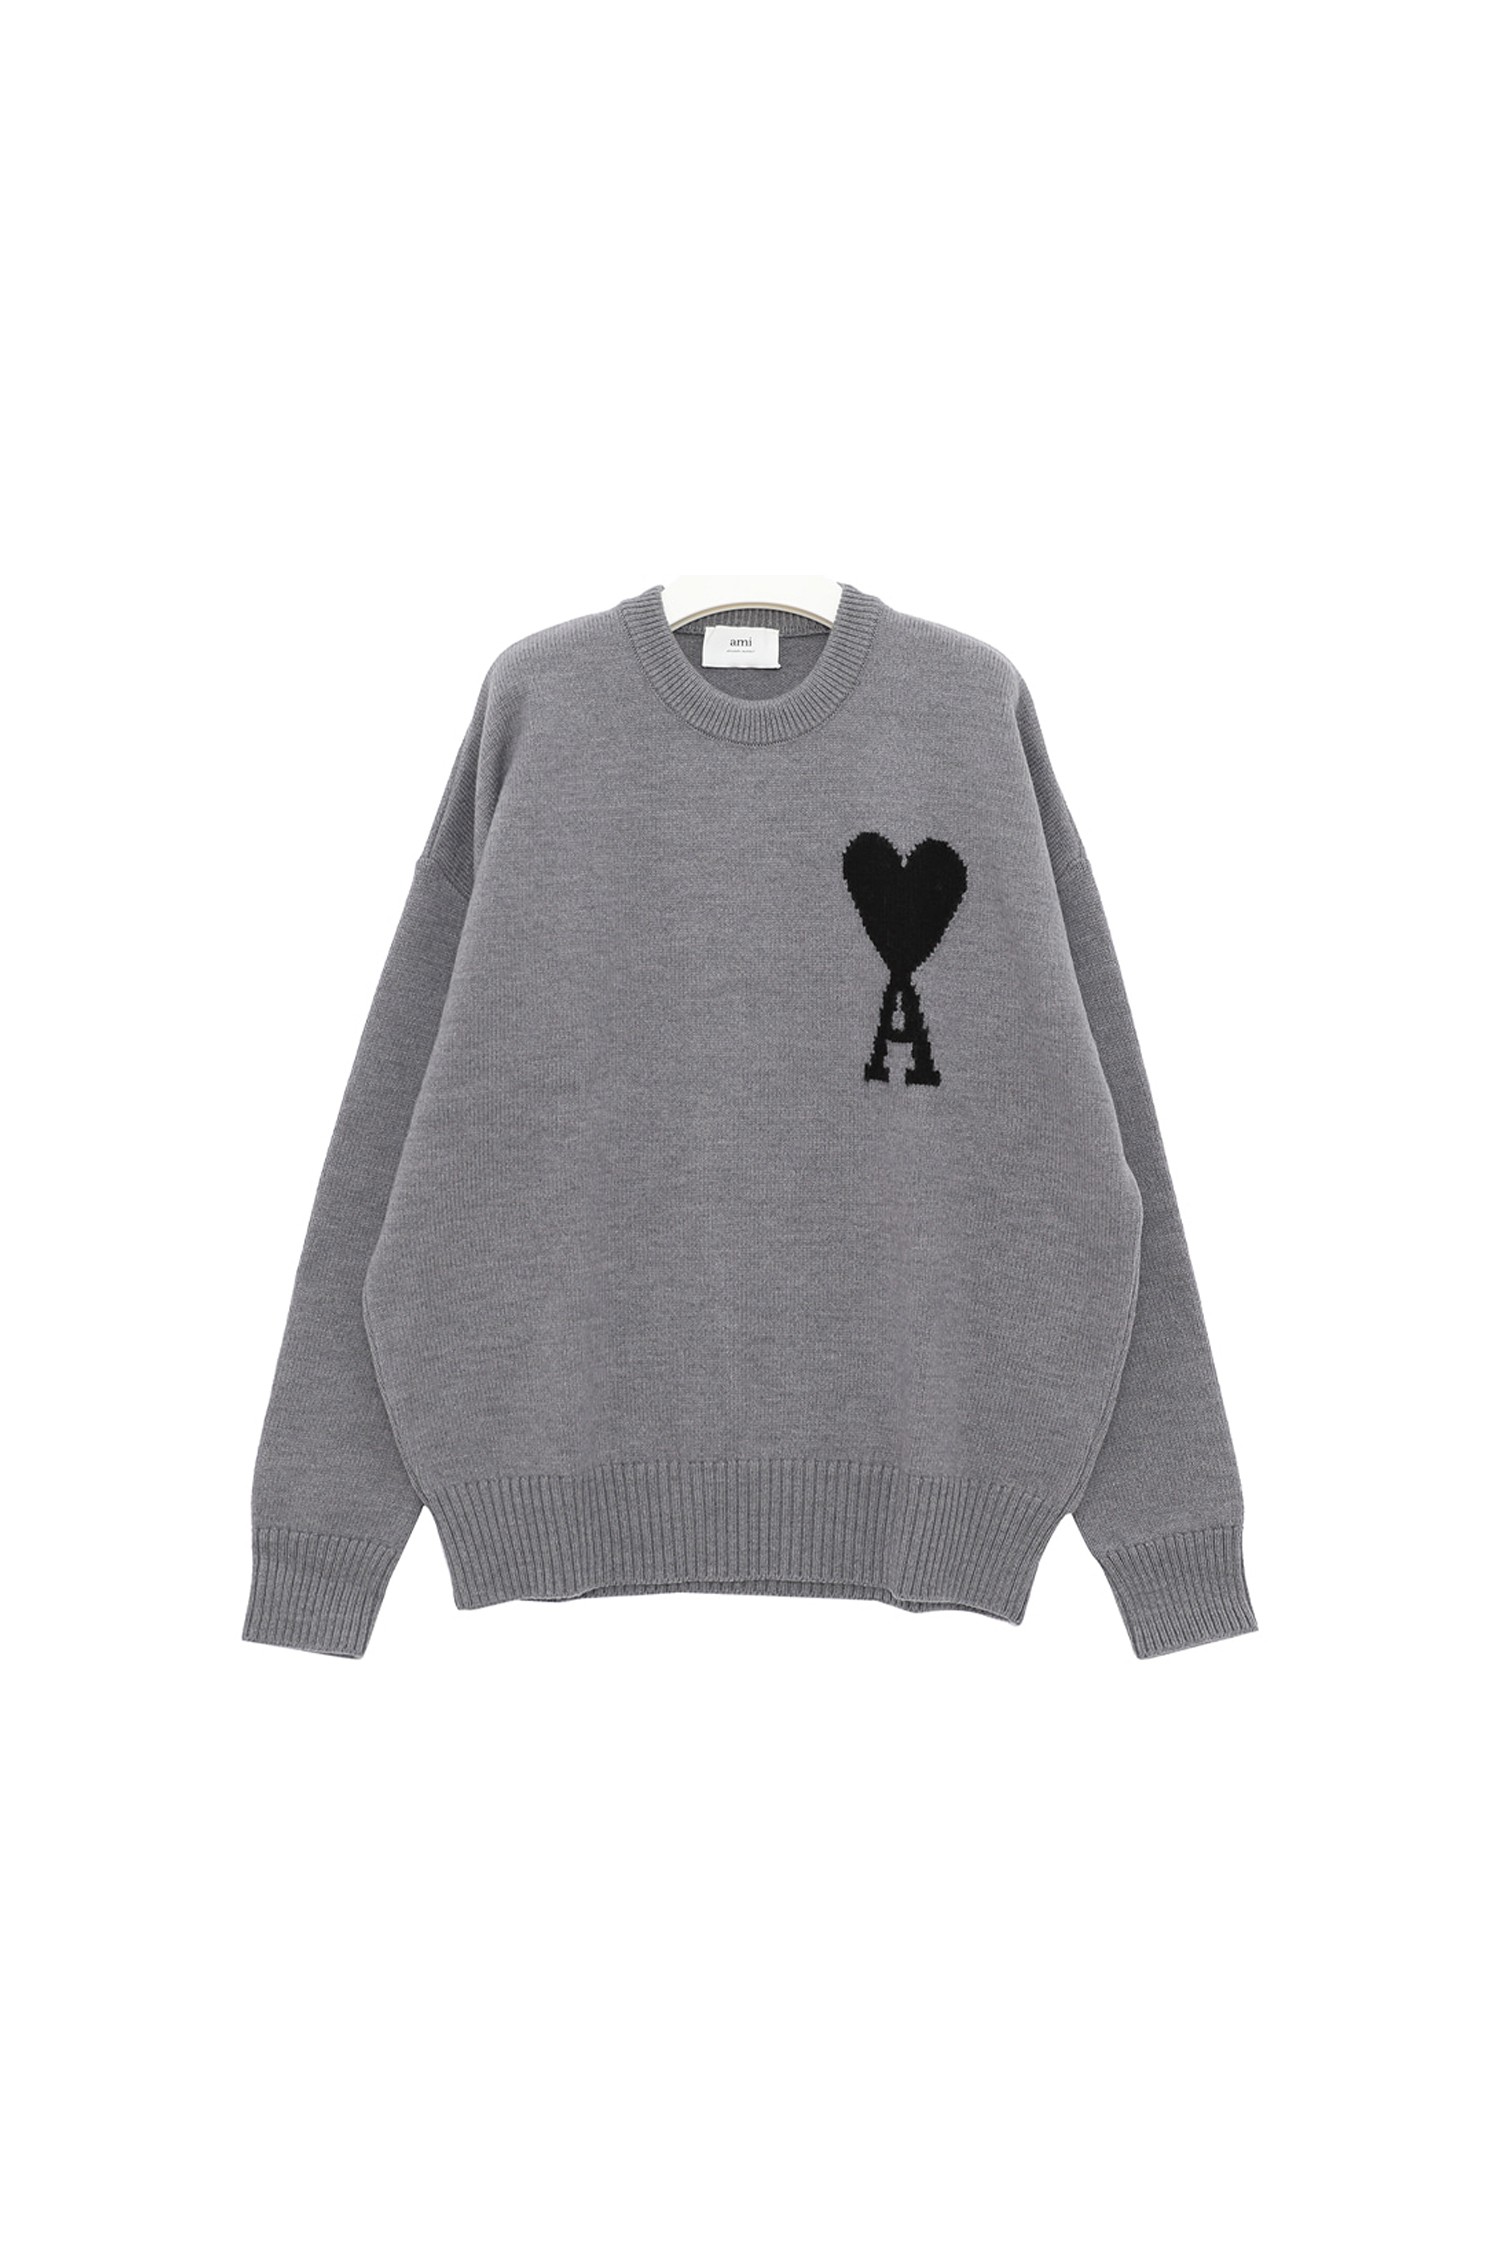 AMI】オーバーサイズインターシャセーター☆UKS002 018 154 (AMI PARIS